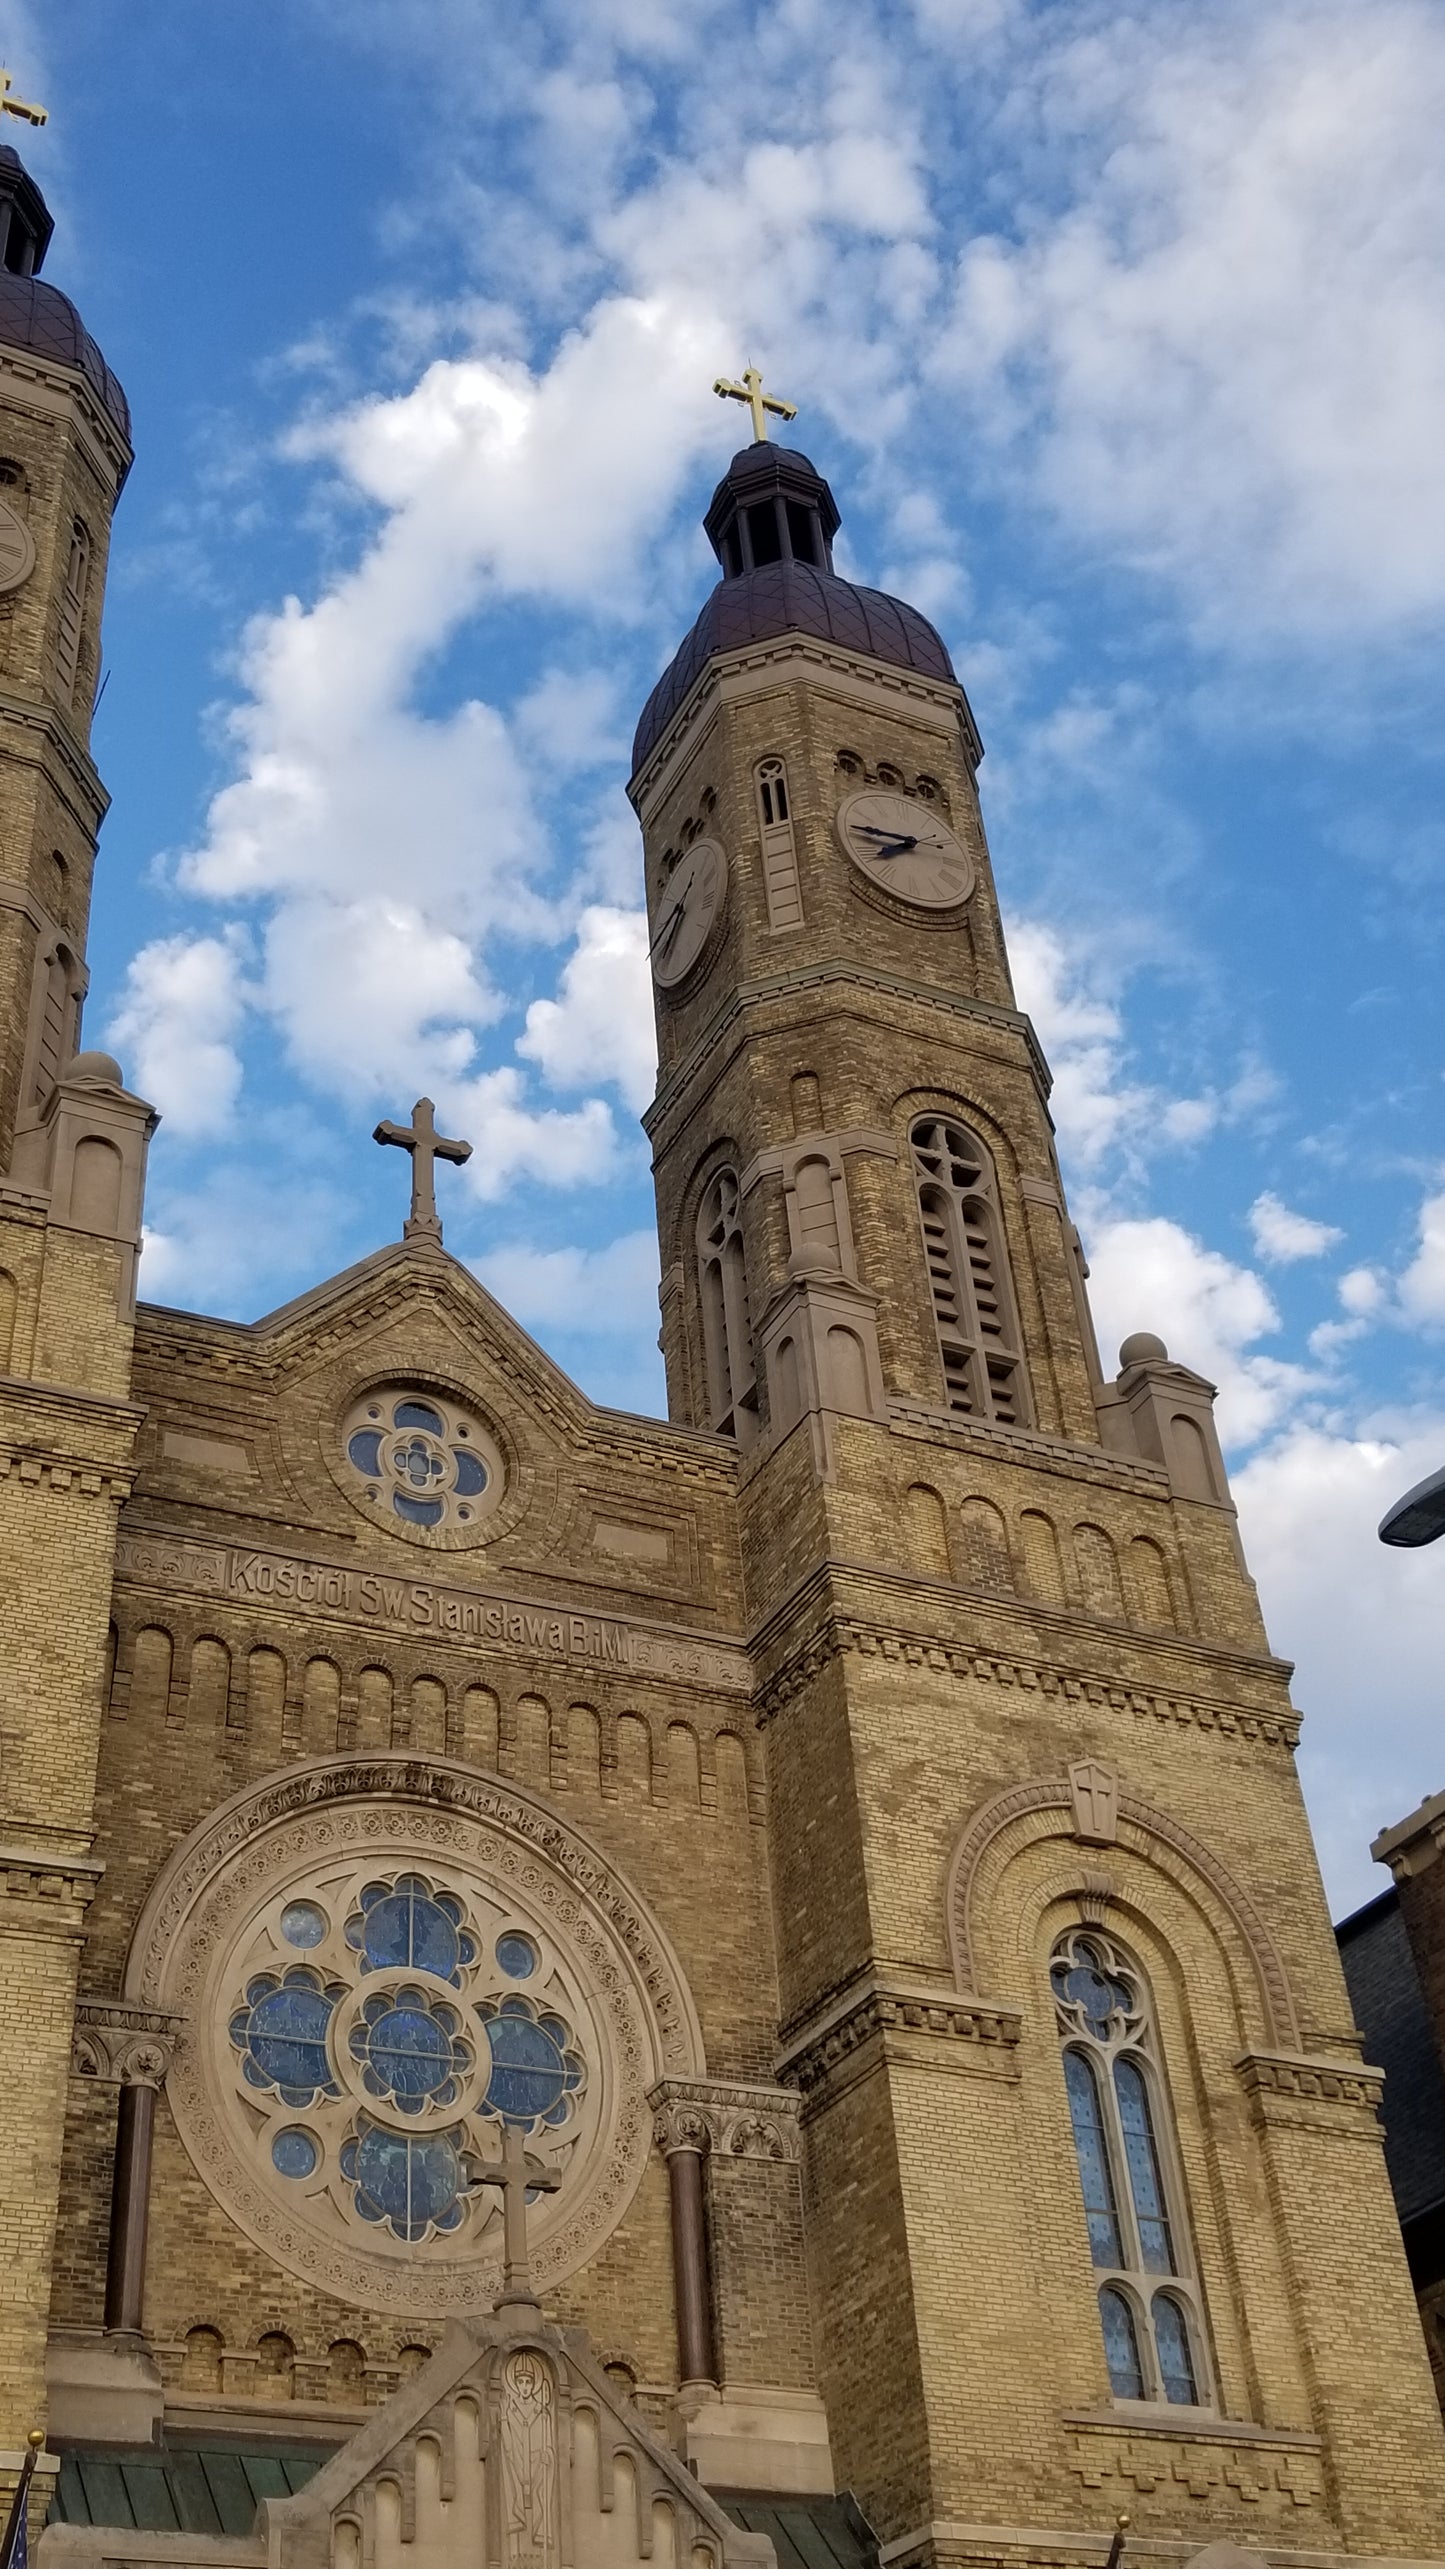 St. Stanislaus Church, Milwaukee